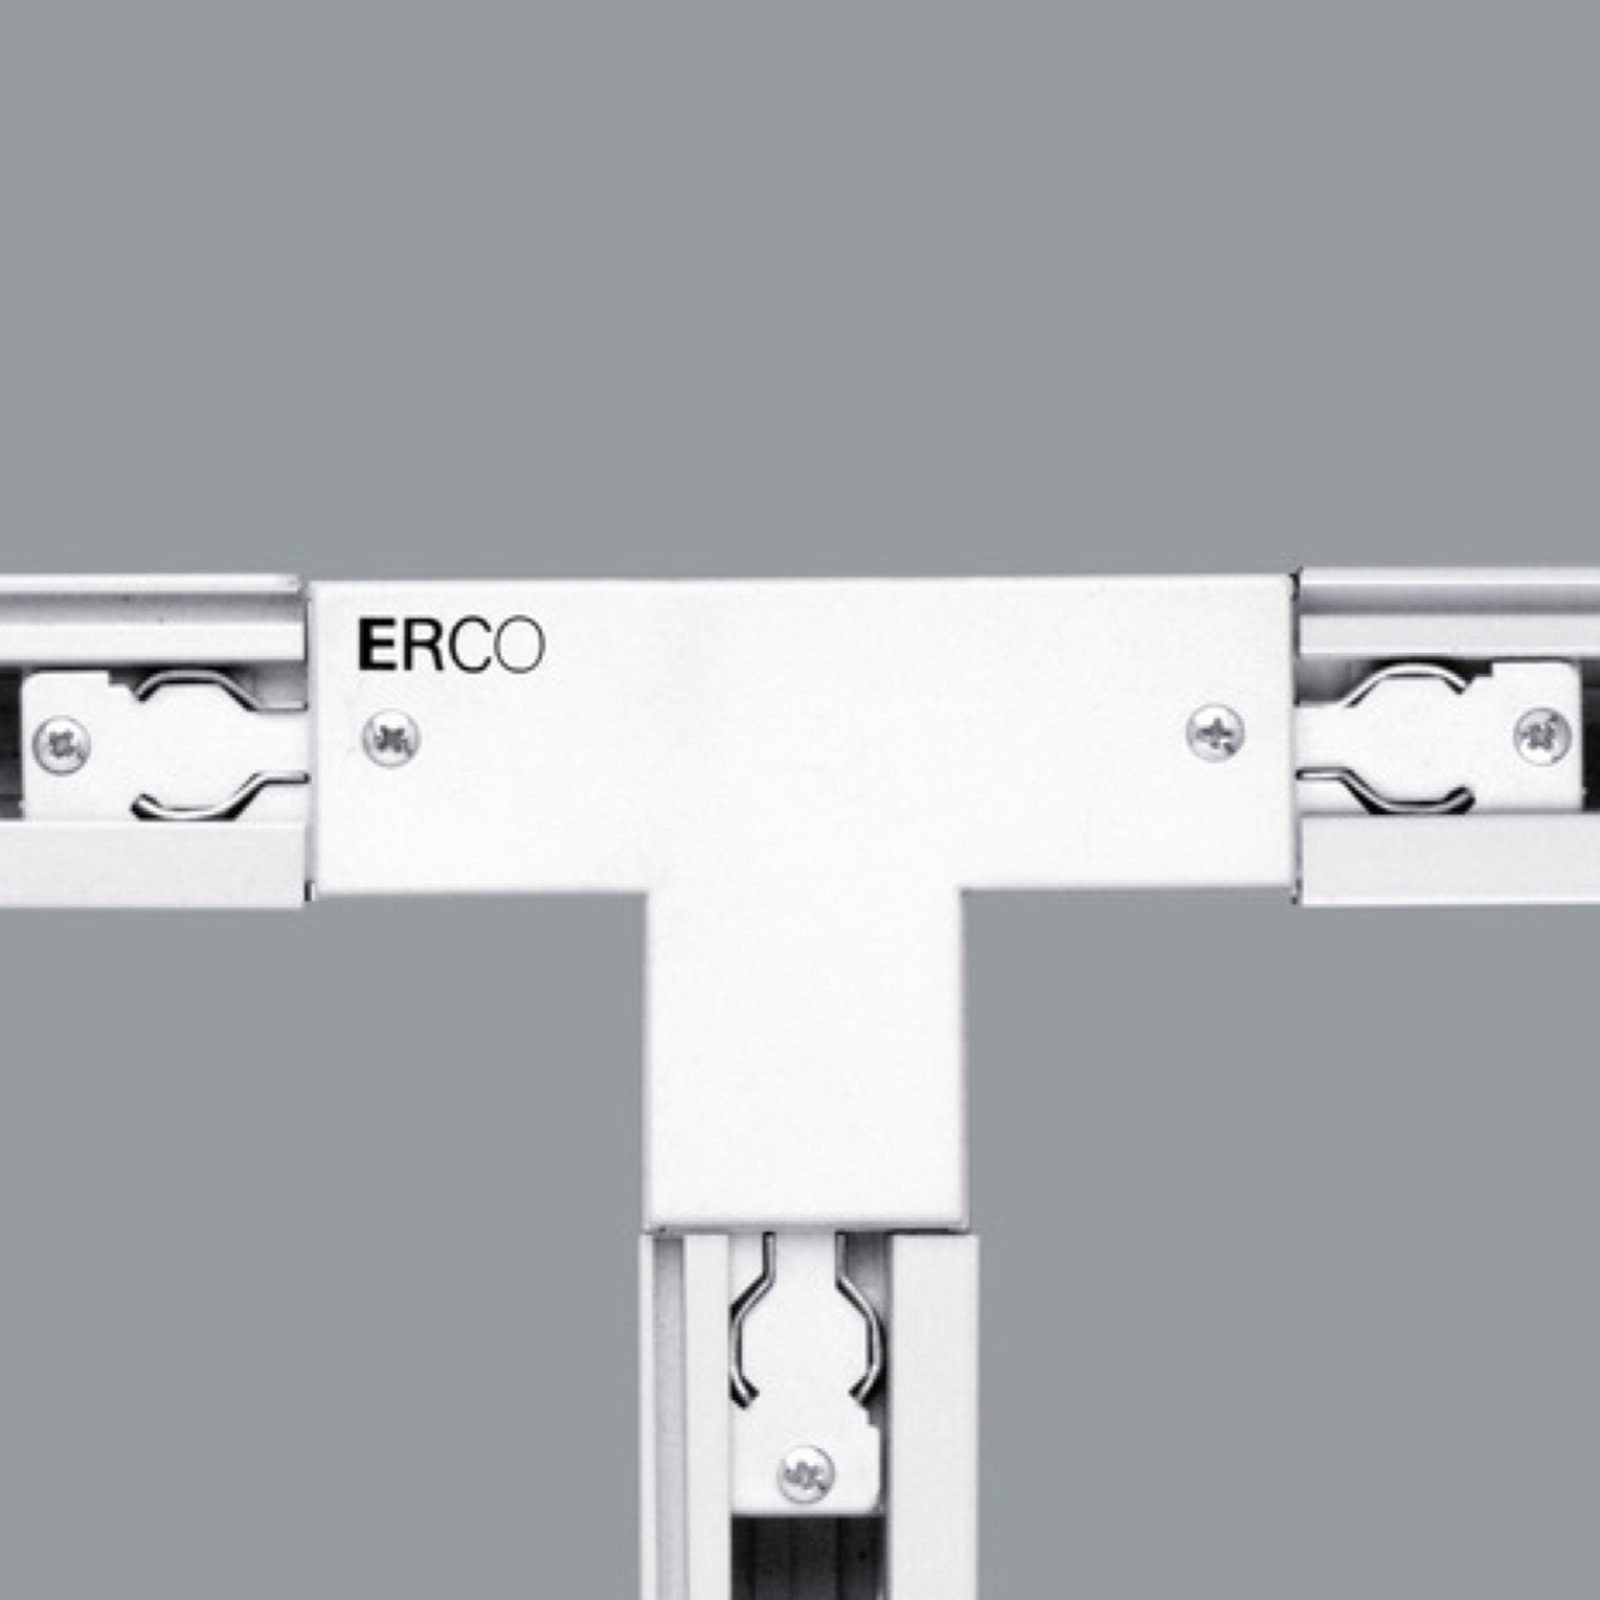 ERCO-3-fas T-anslutning skyddsledare vänster vit